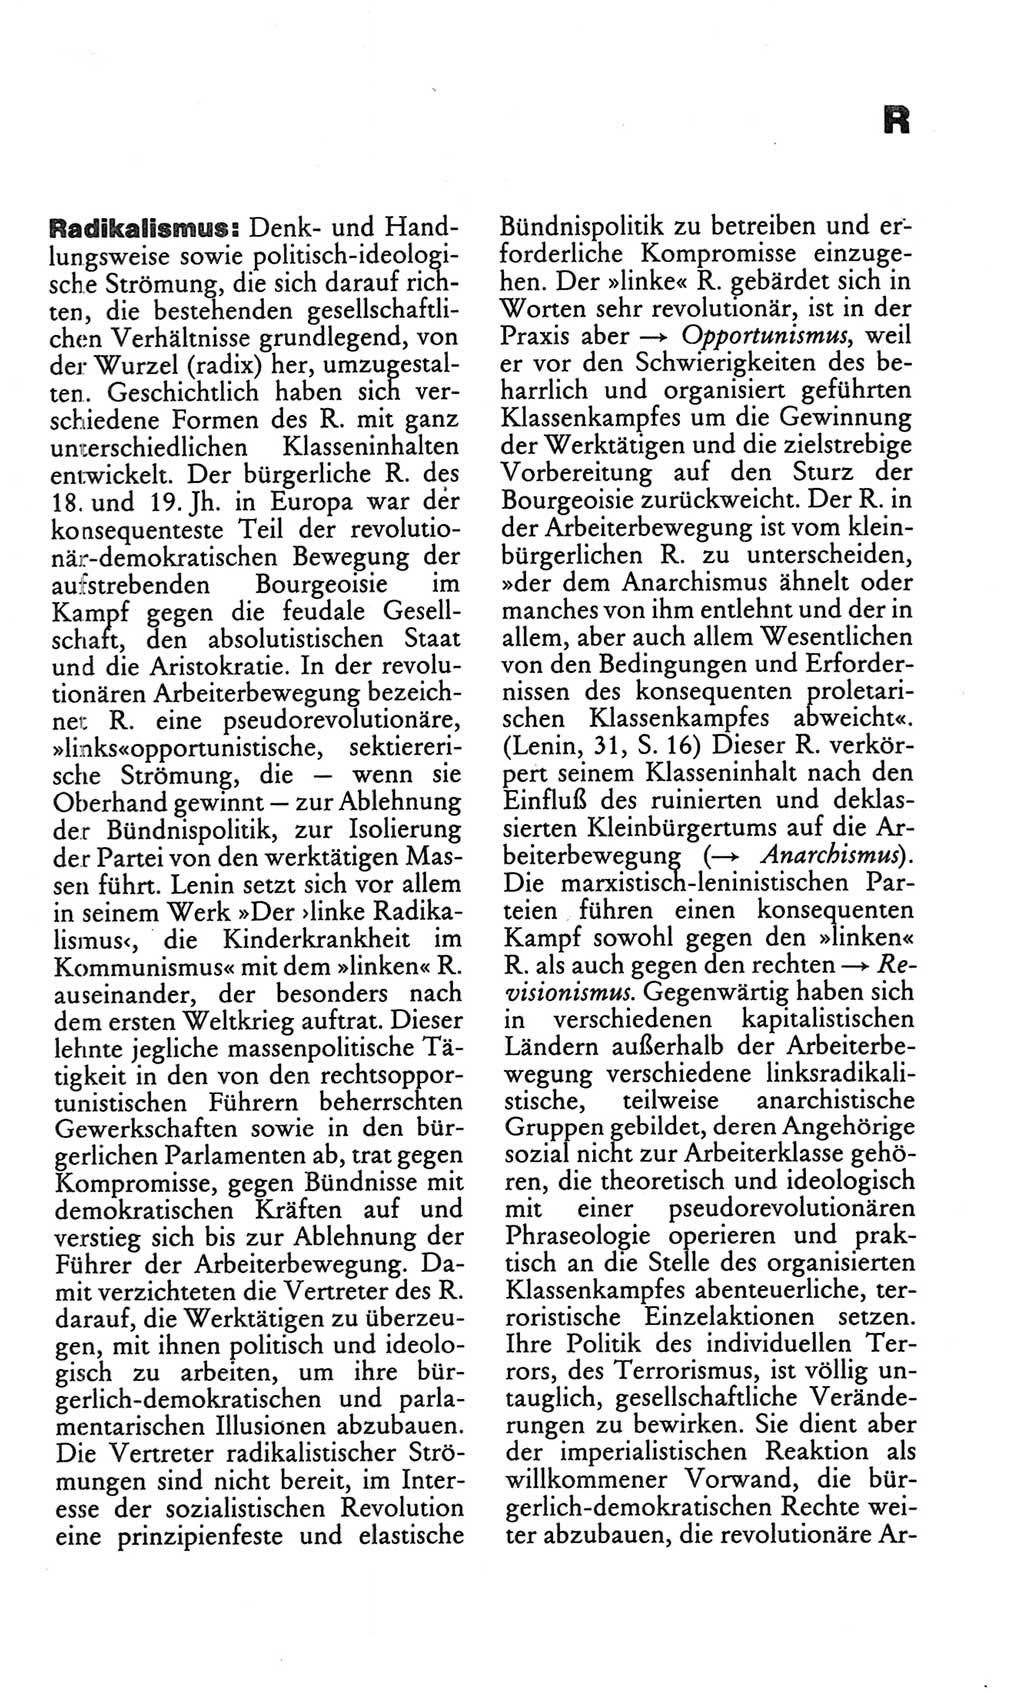 Kleines politisches Wörterbuch [Deutsche Demokratische Republik (DDR)] 1986, Seite 783 (Kl. pol. Wb. DDR 1986, S. 783)